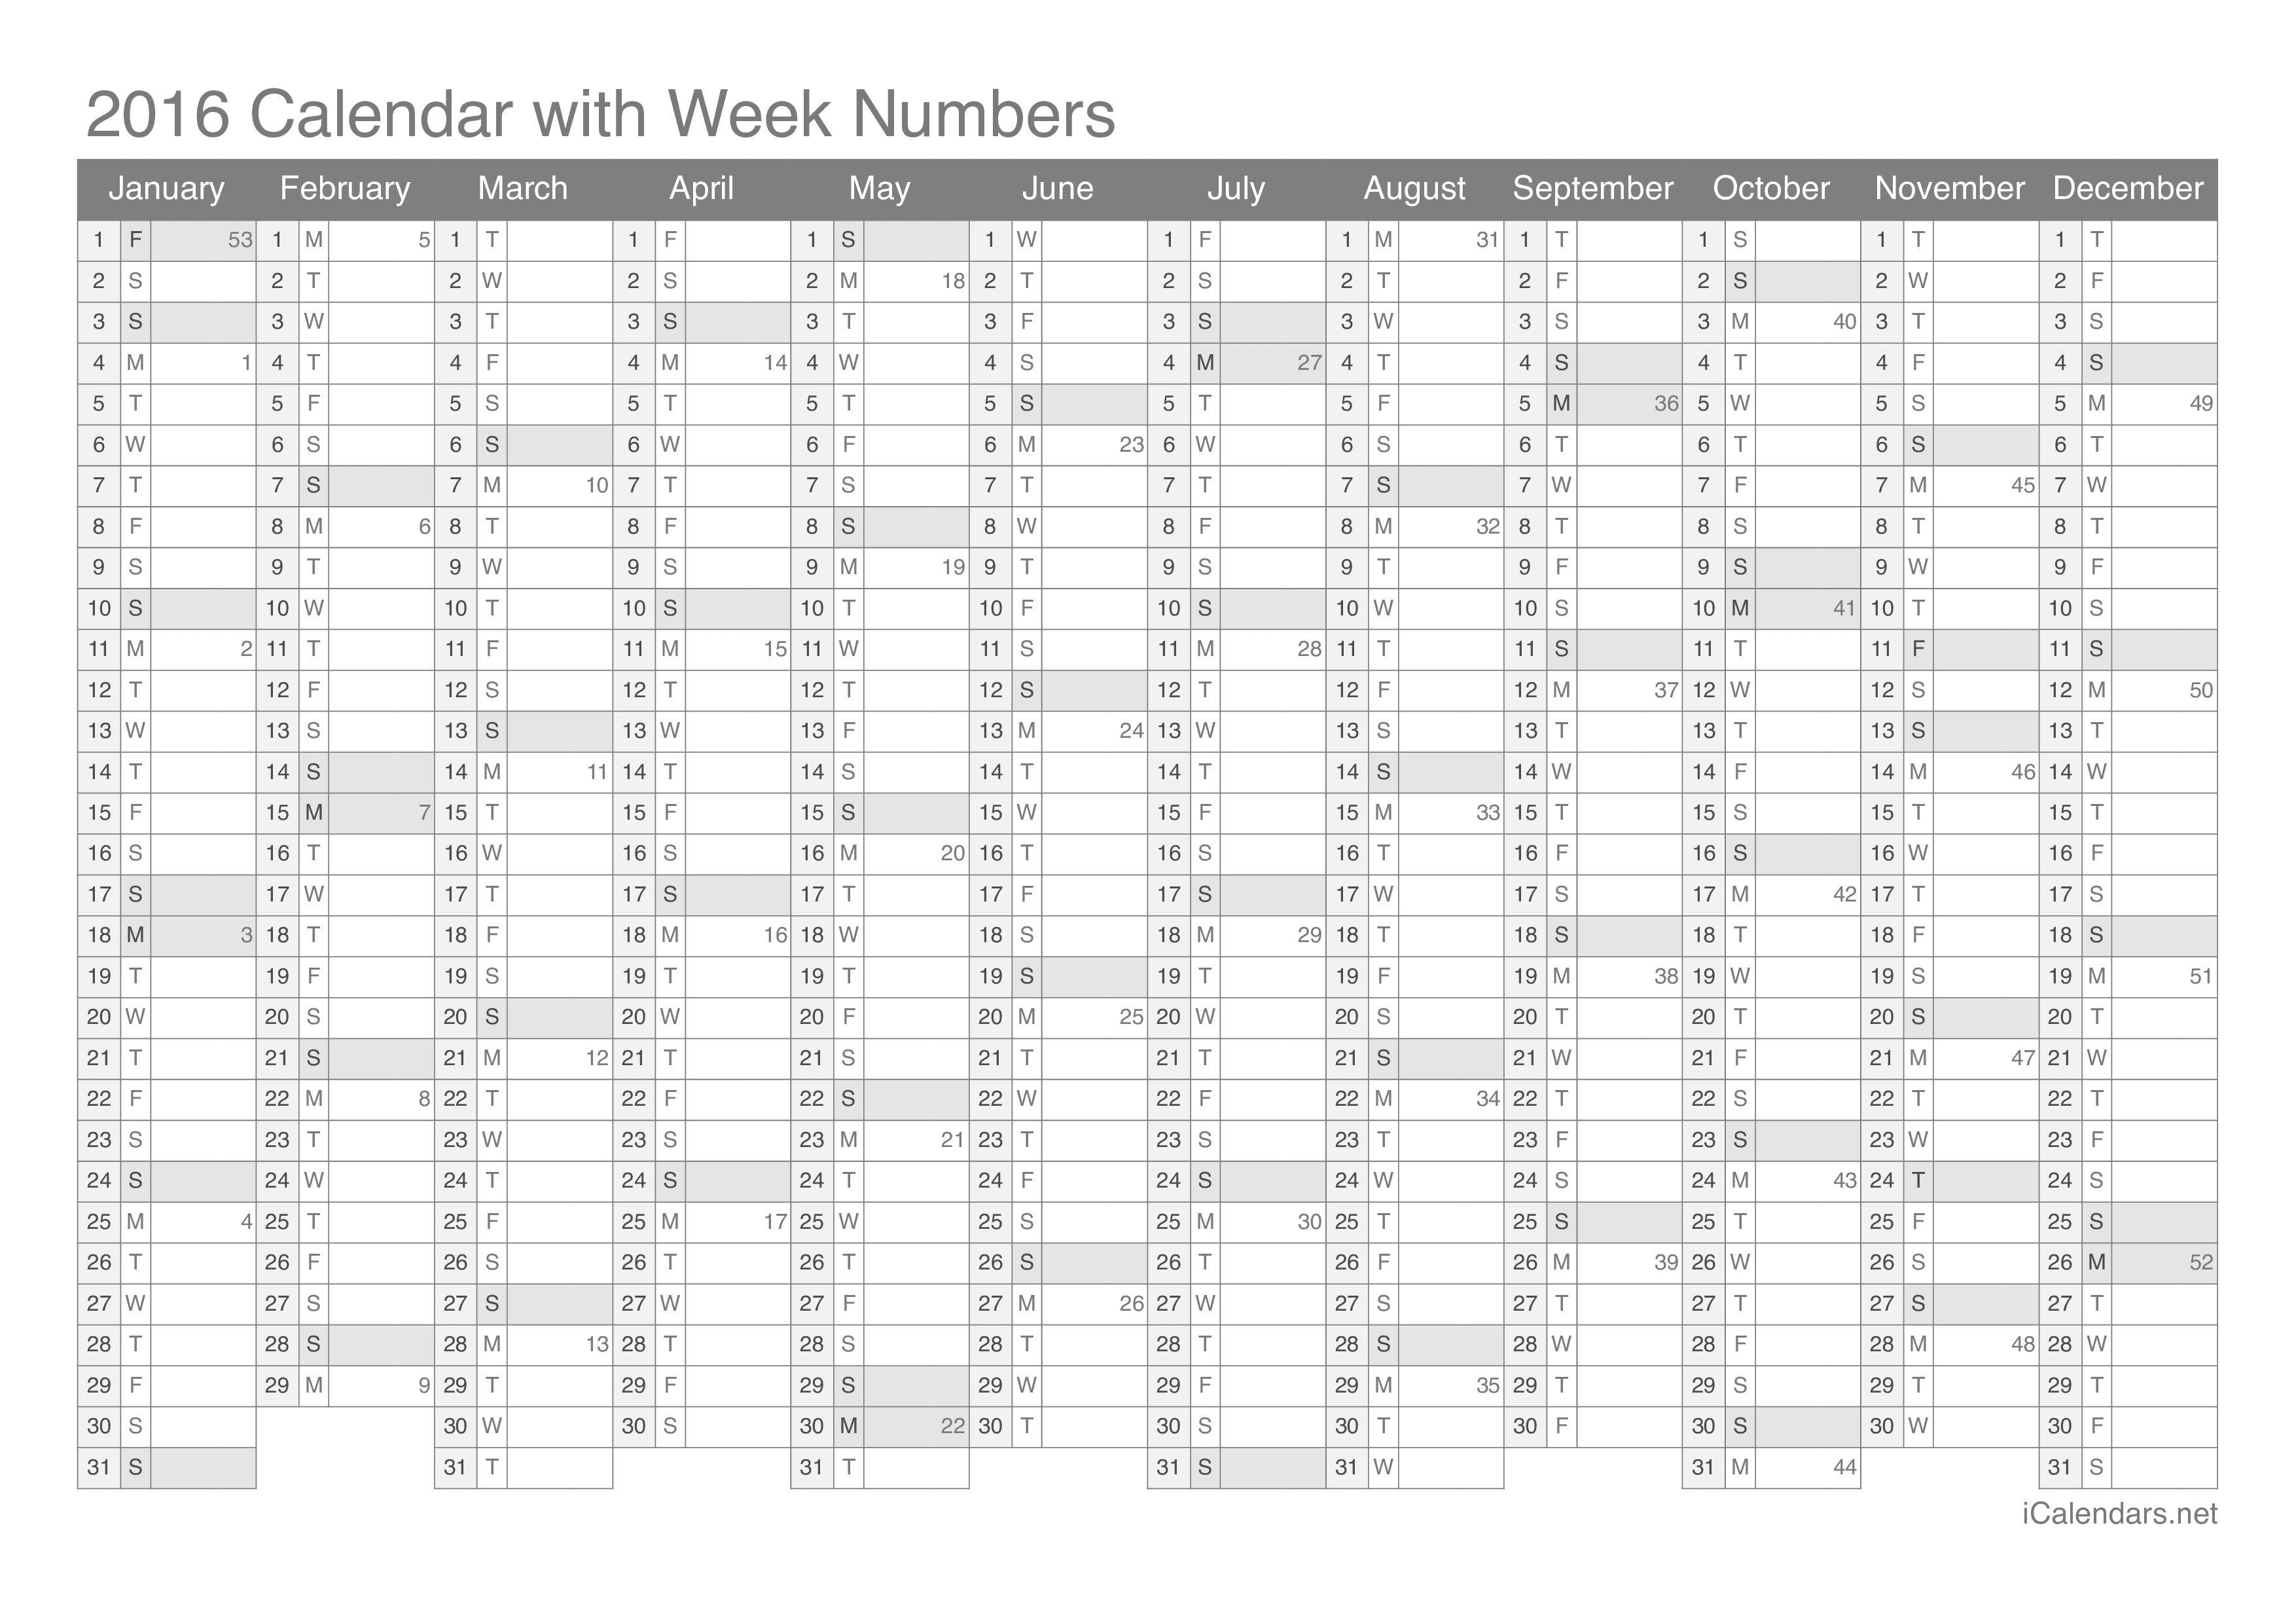 2016 Calendar with week numbers